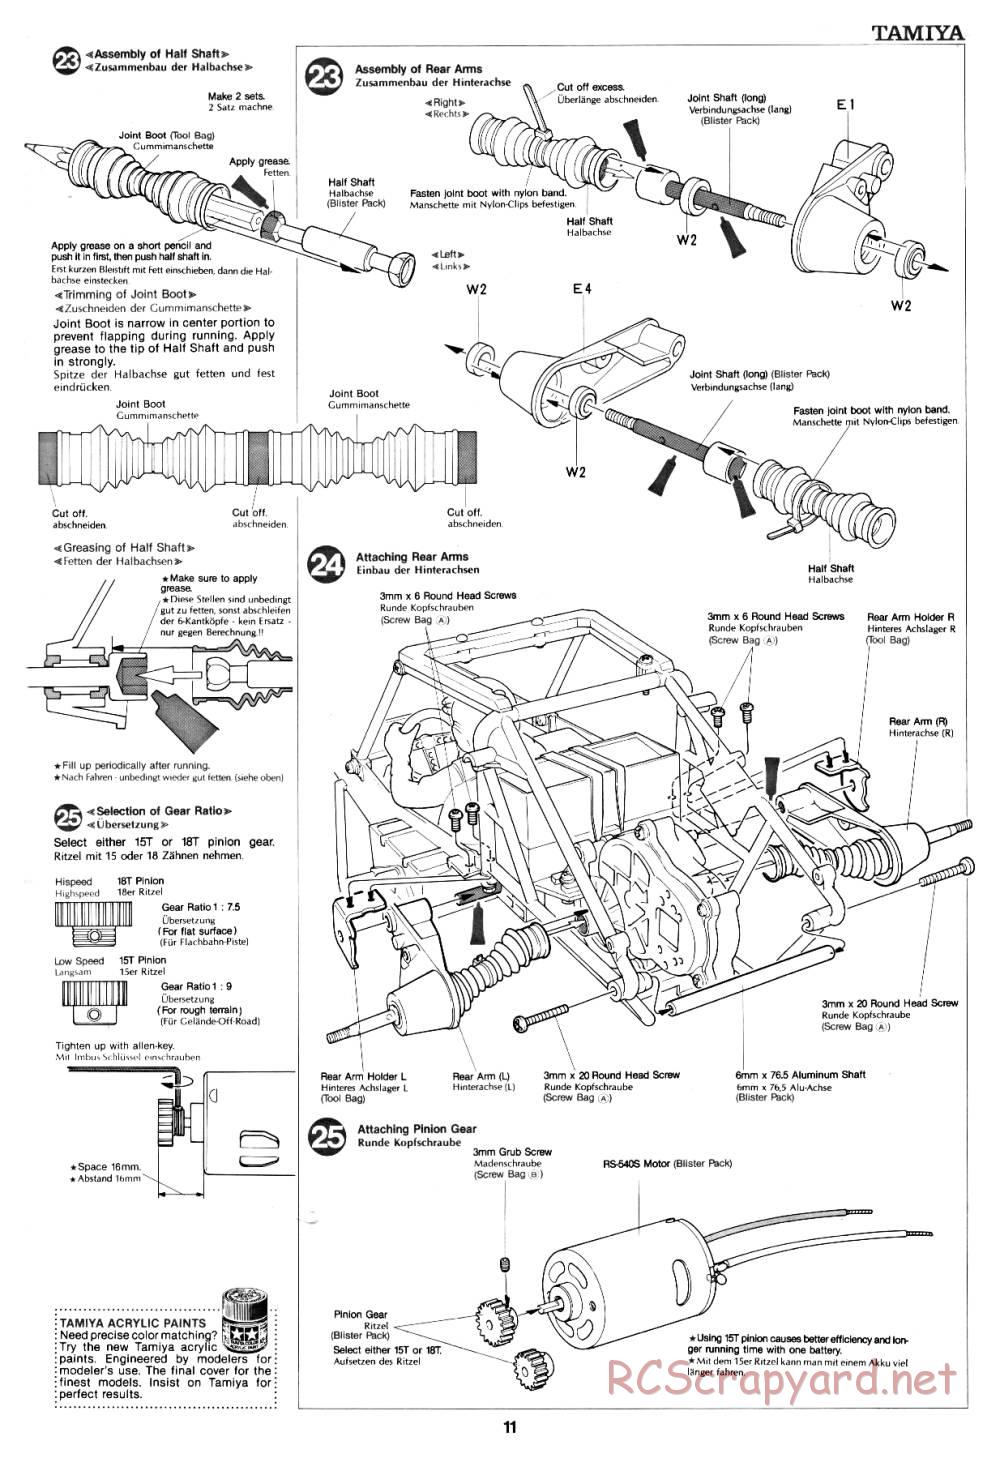 Tamiya - Fast Attack Vehicle - 58046 - Manual - Page 11